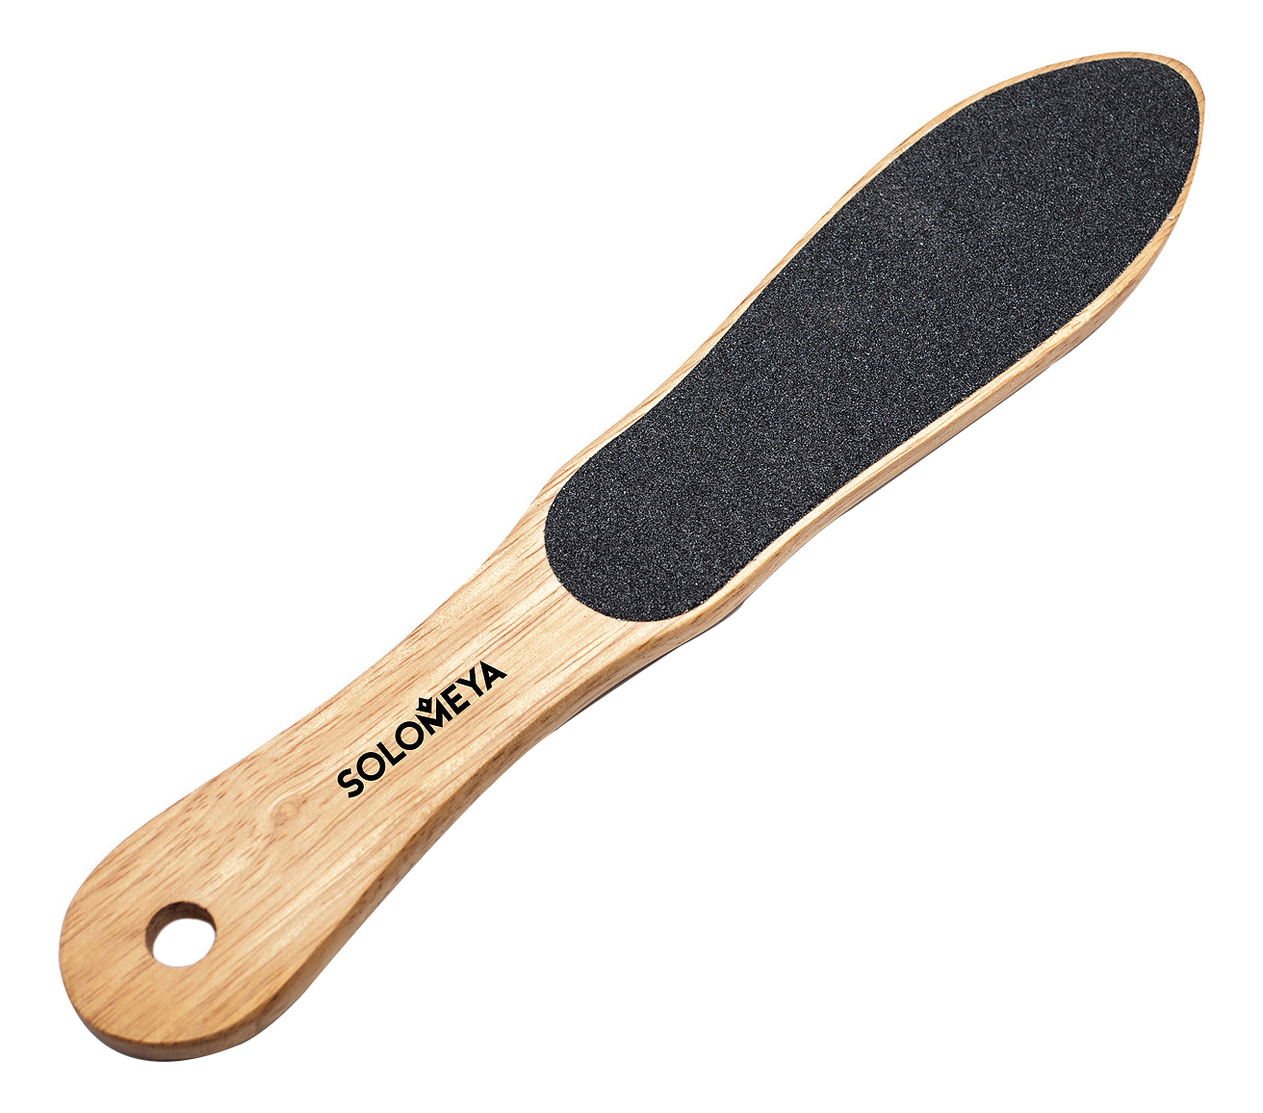 Профессиональная деревянная пилка для педикюра Professional Wooden Foot File Foot Shape